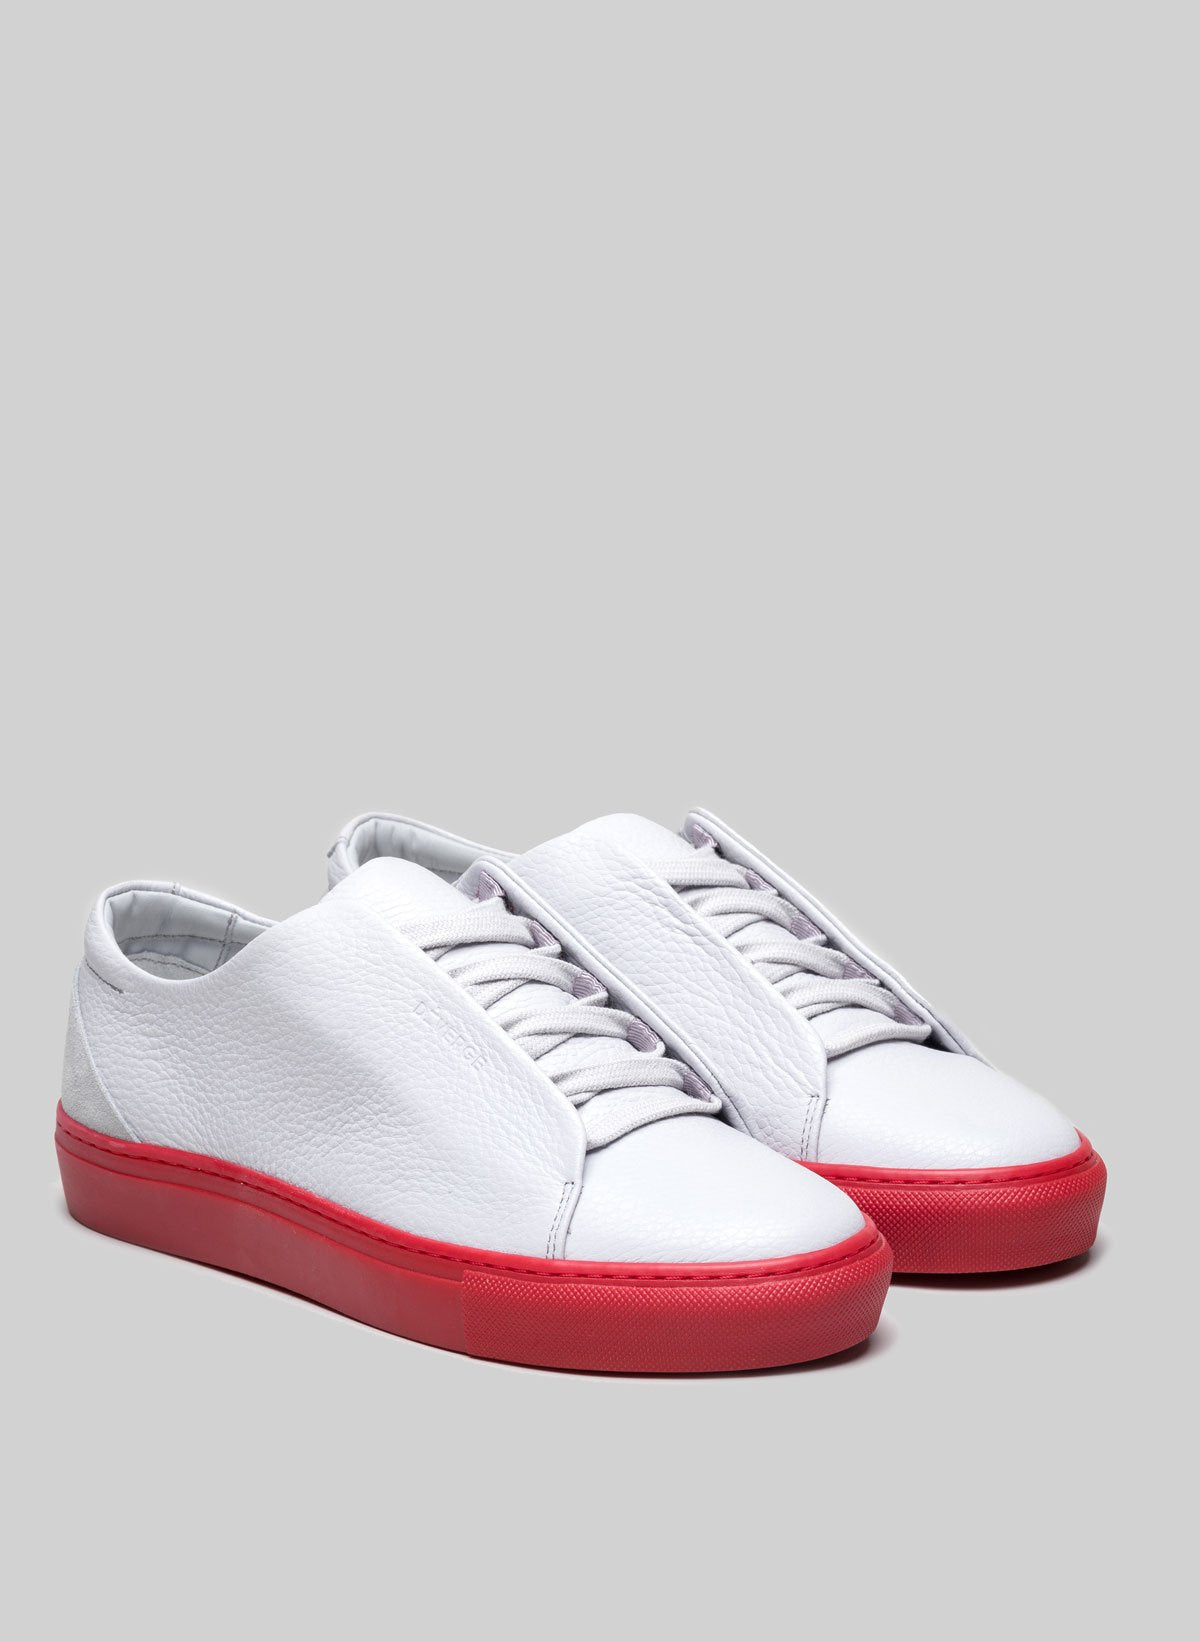 Une paire de low top customisés blancs sneakers avec semelles rouges par Diverge.